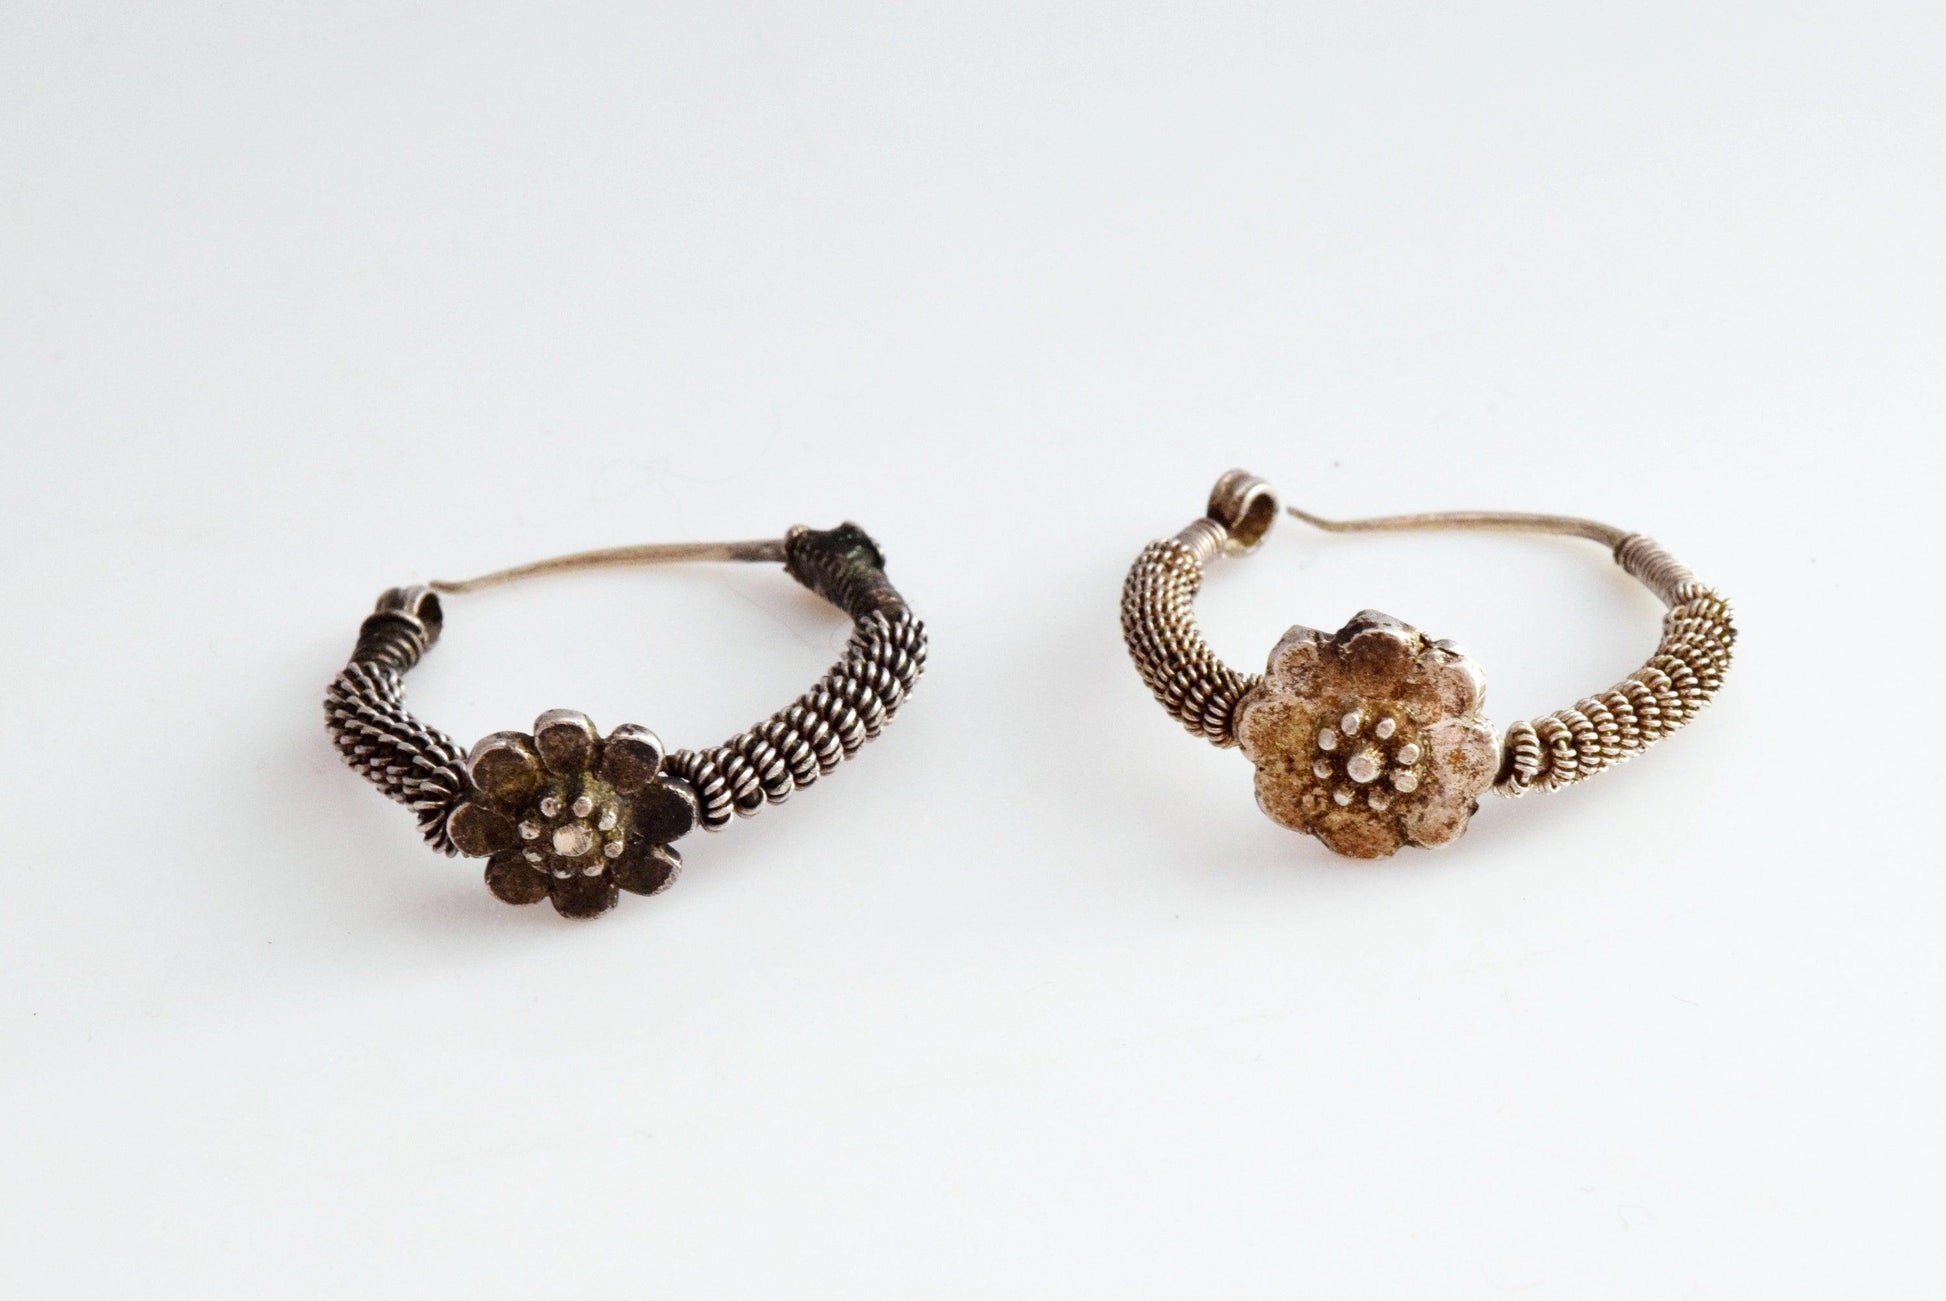 Vintage Small Indian Silver Hoop Earrings or Nose Rings - Anteeka